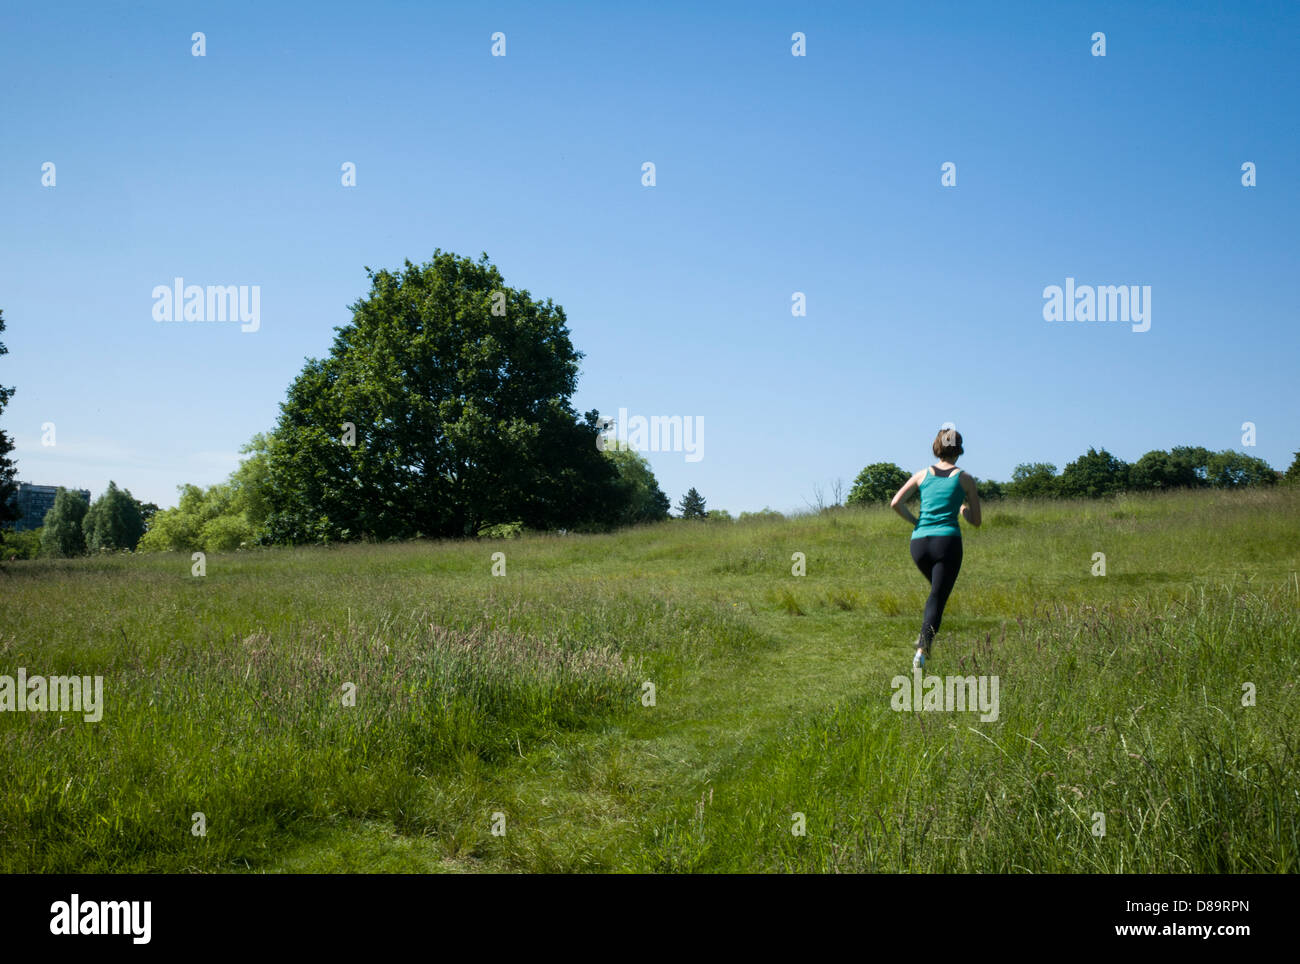 Londres Hampstead Heath, les joggeurs, le jogging sur la santé, de l'herbe. Banque D'Images